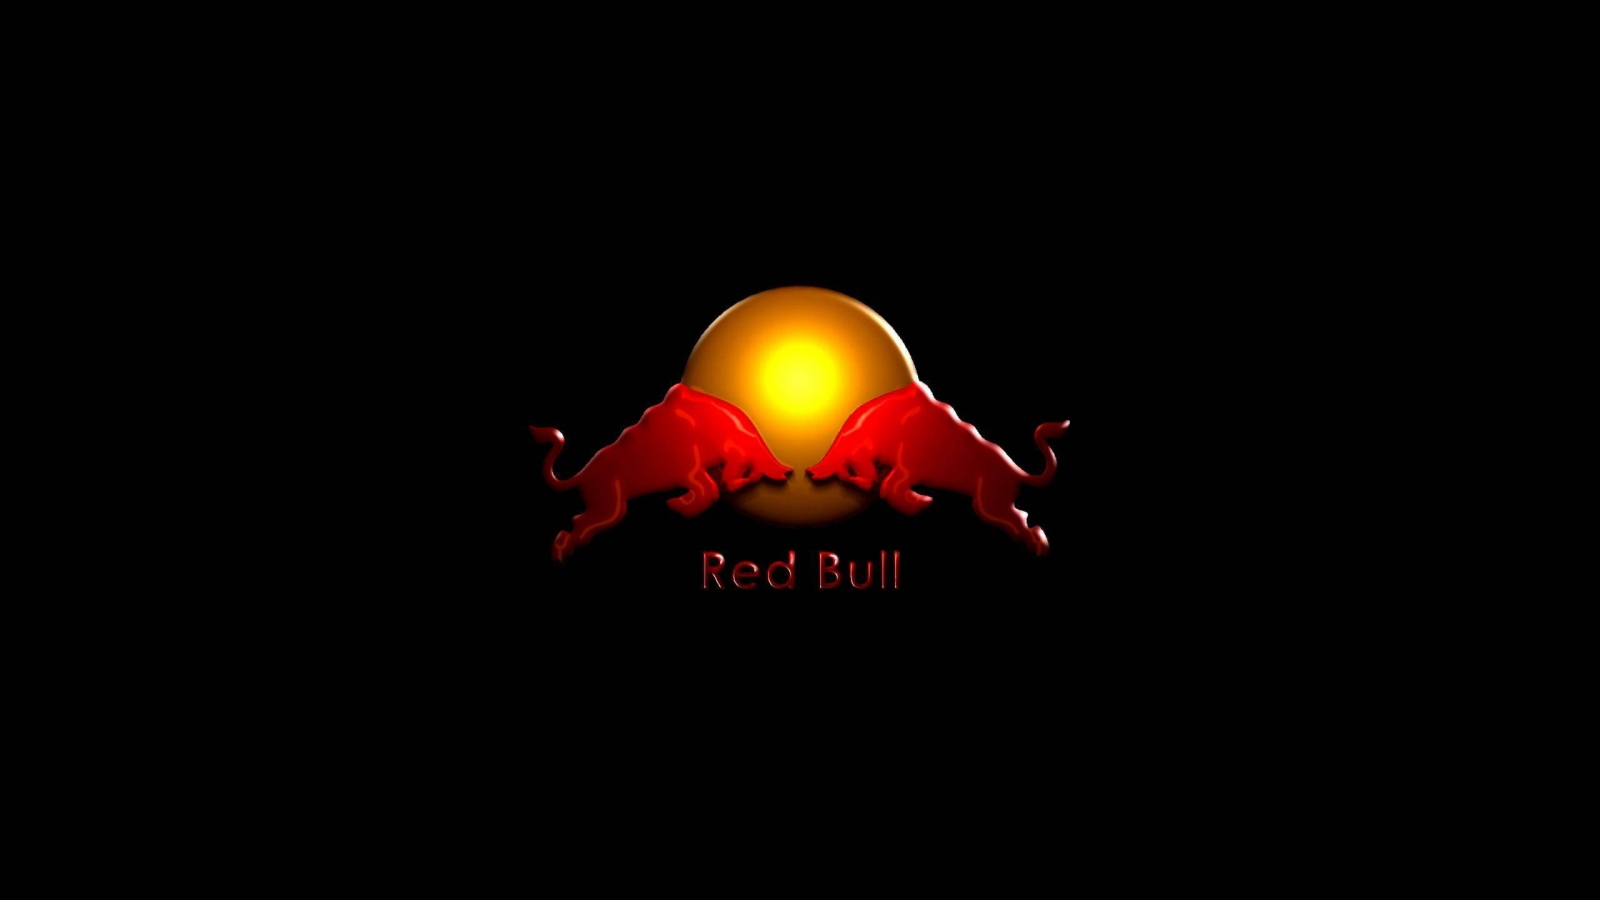 Red Bull for 1600 x 900 HDTV resolution